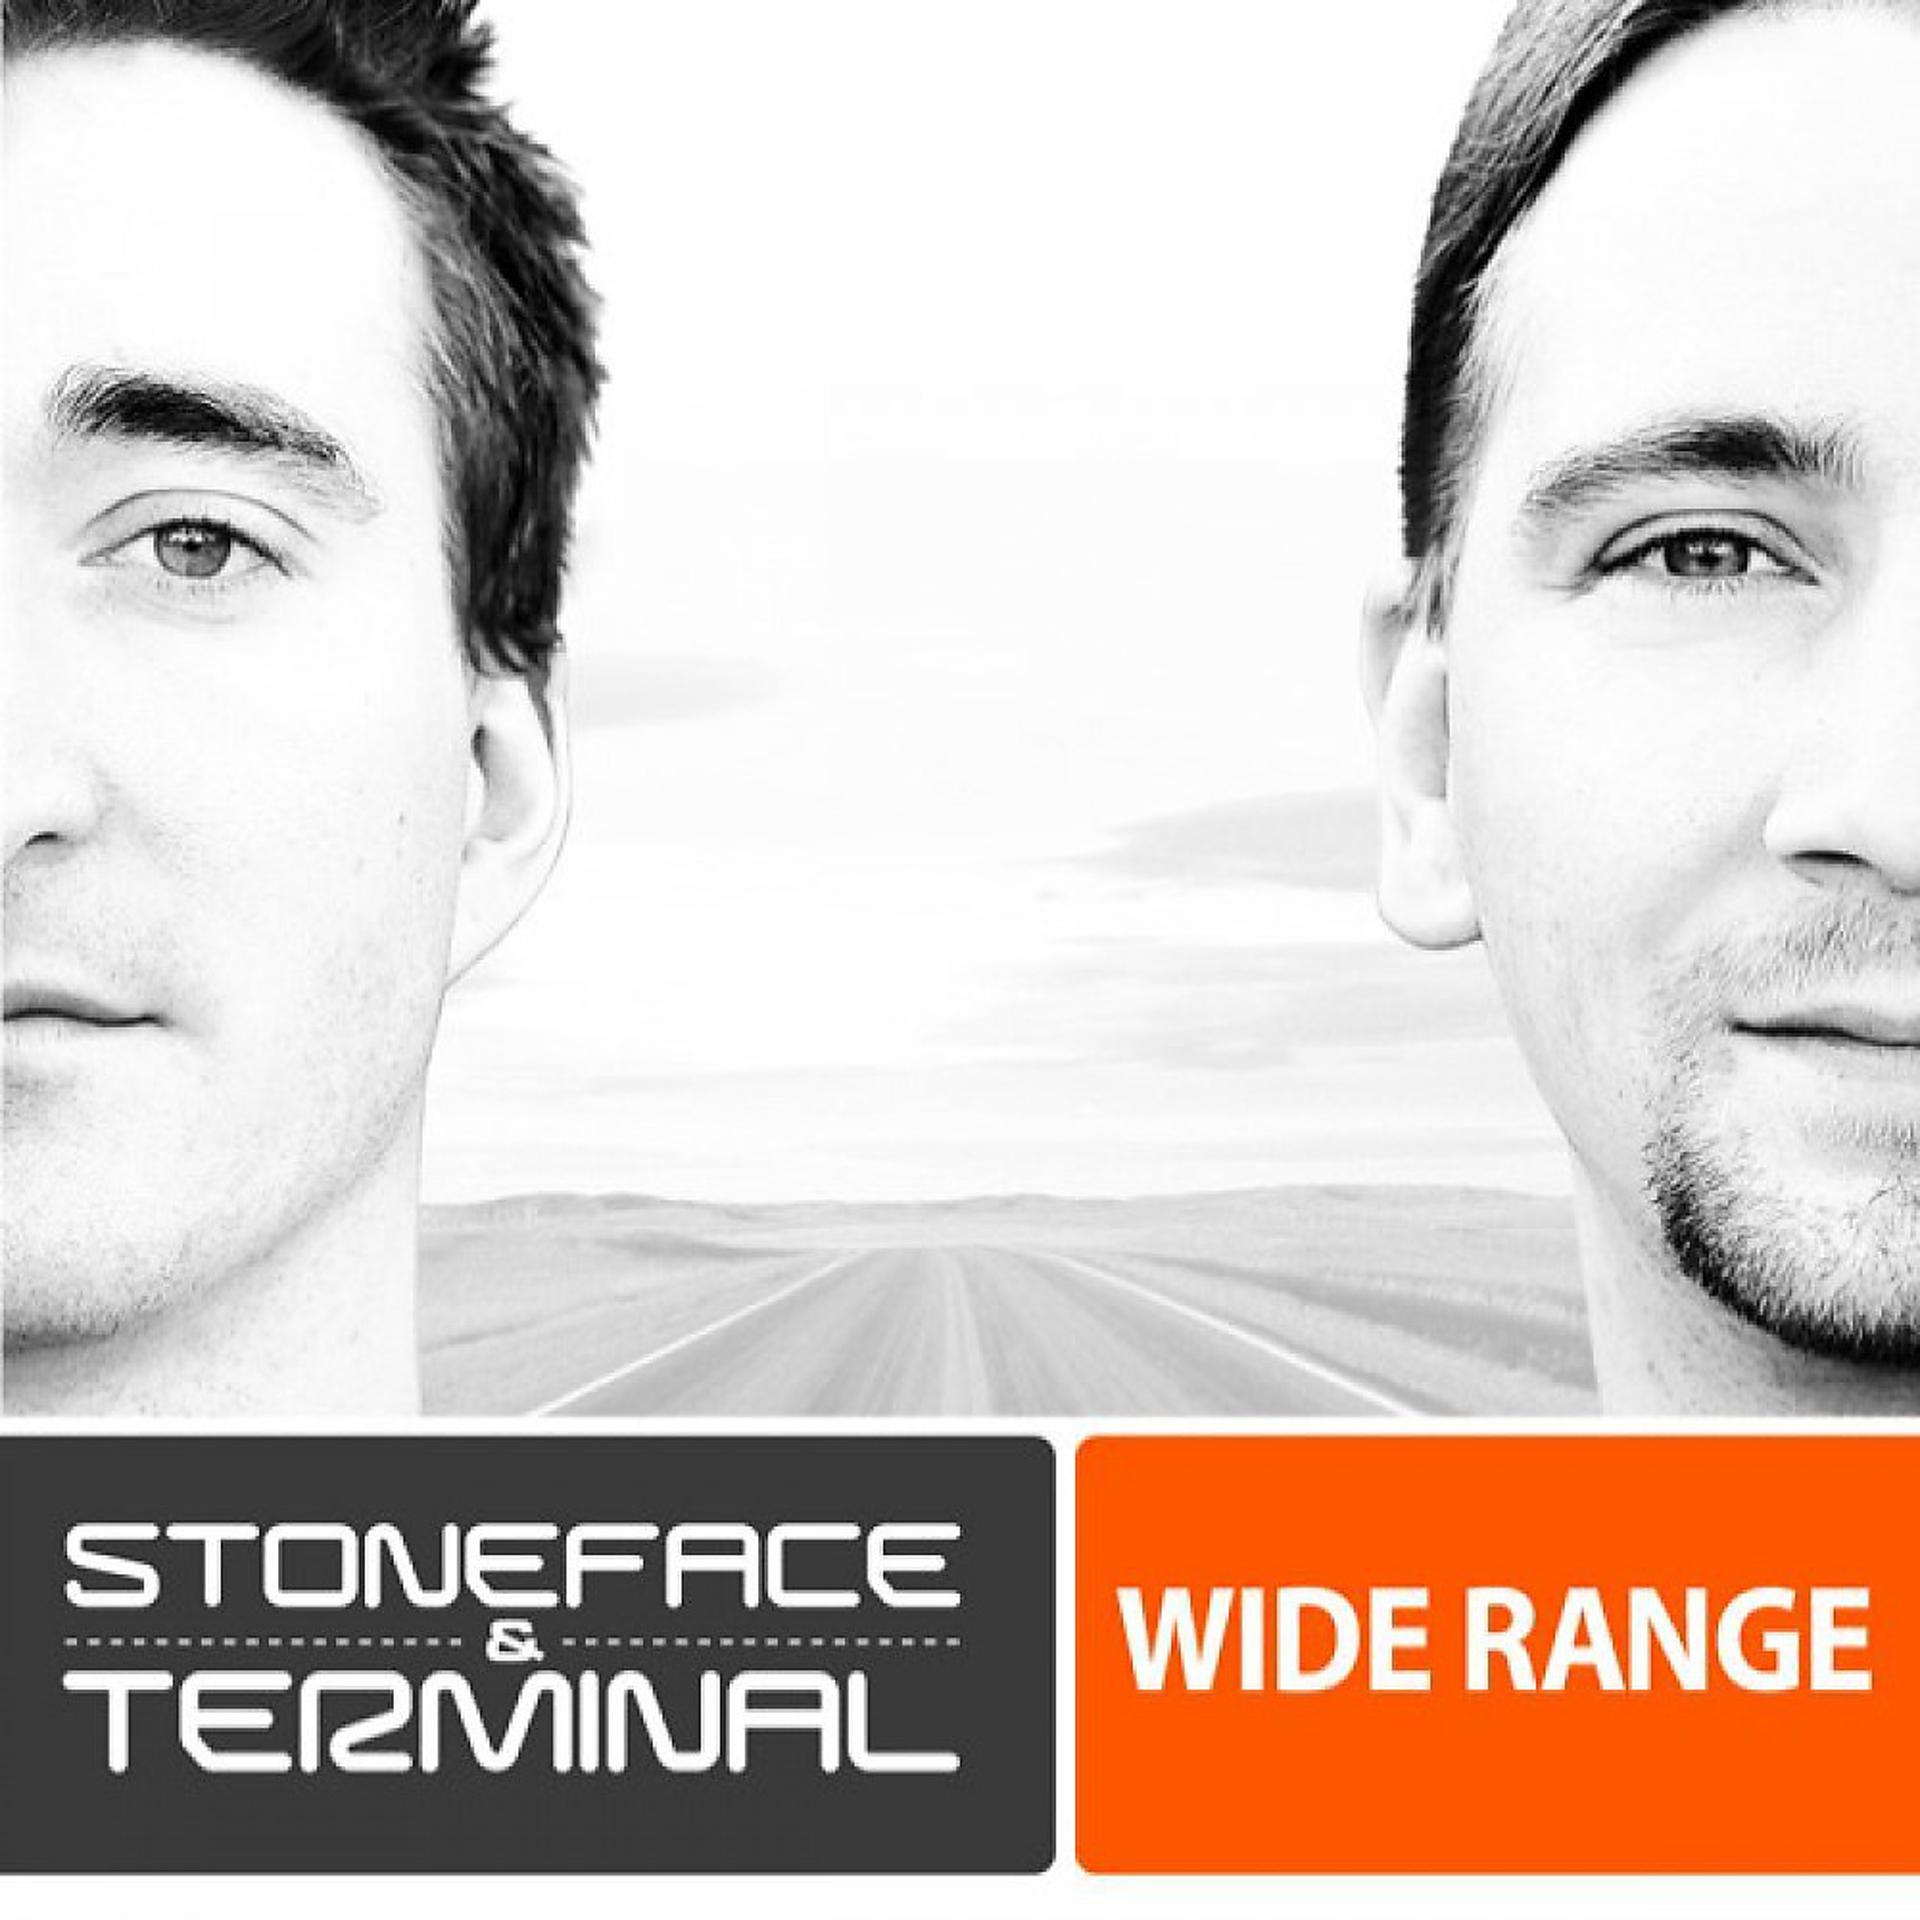 Stoneface terminal. Wide Stoneface. Stoneface & Terminal - Venus. Stoneface Terminal wonderful.